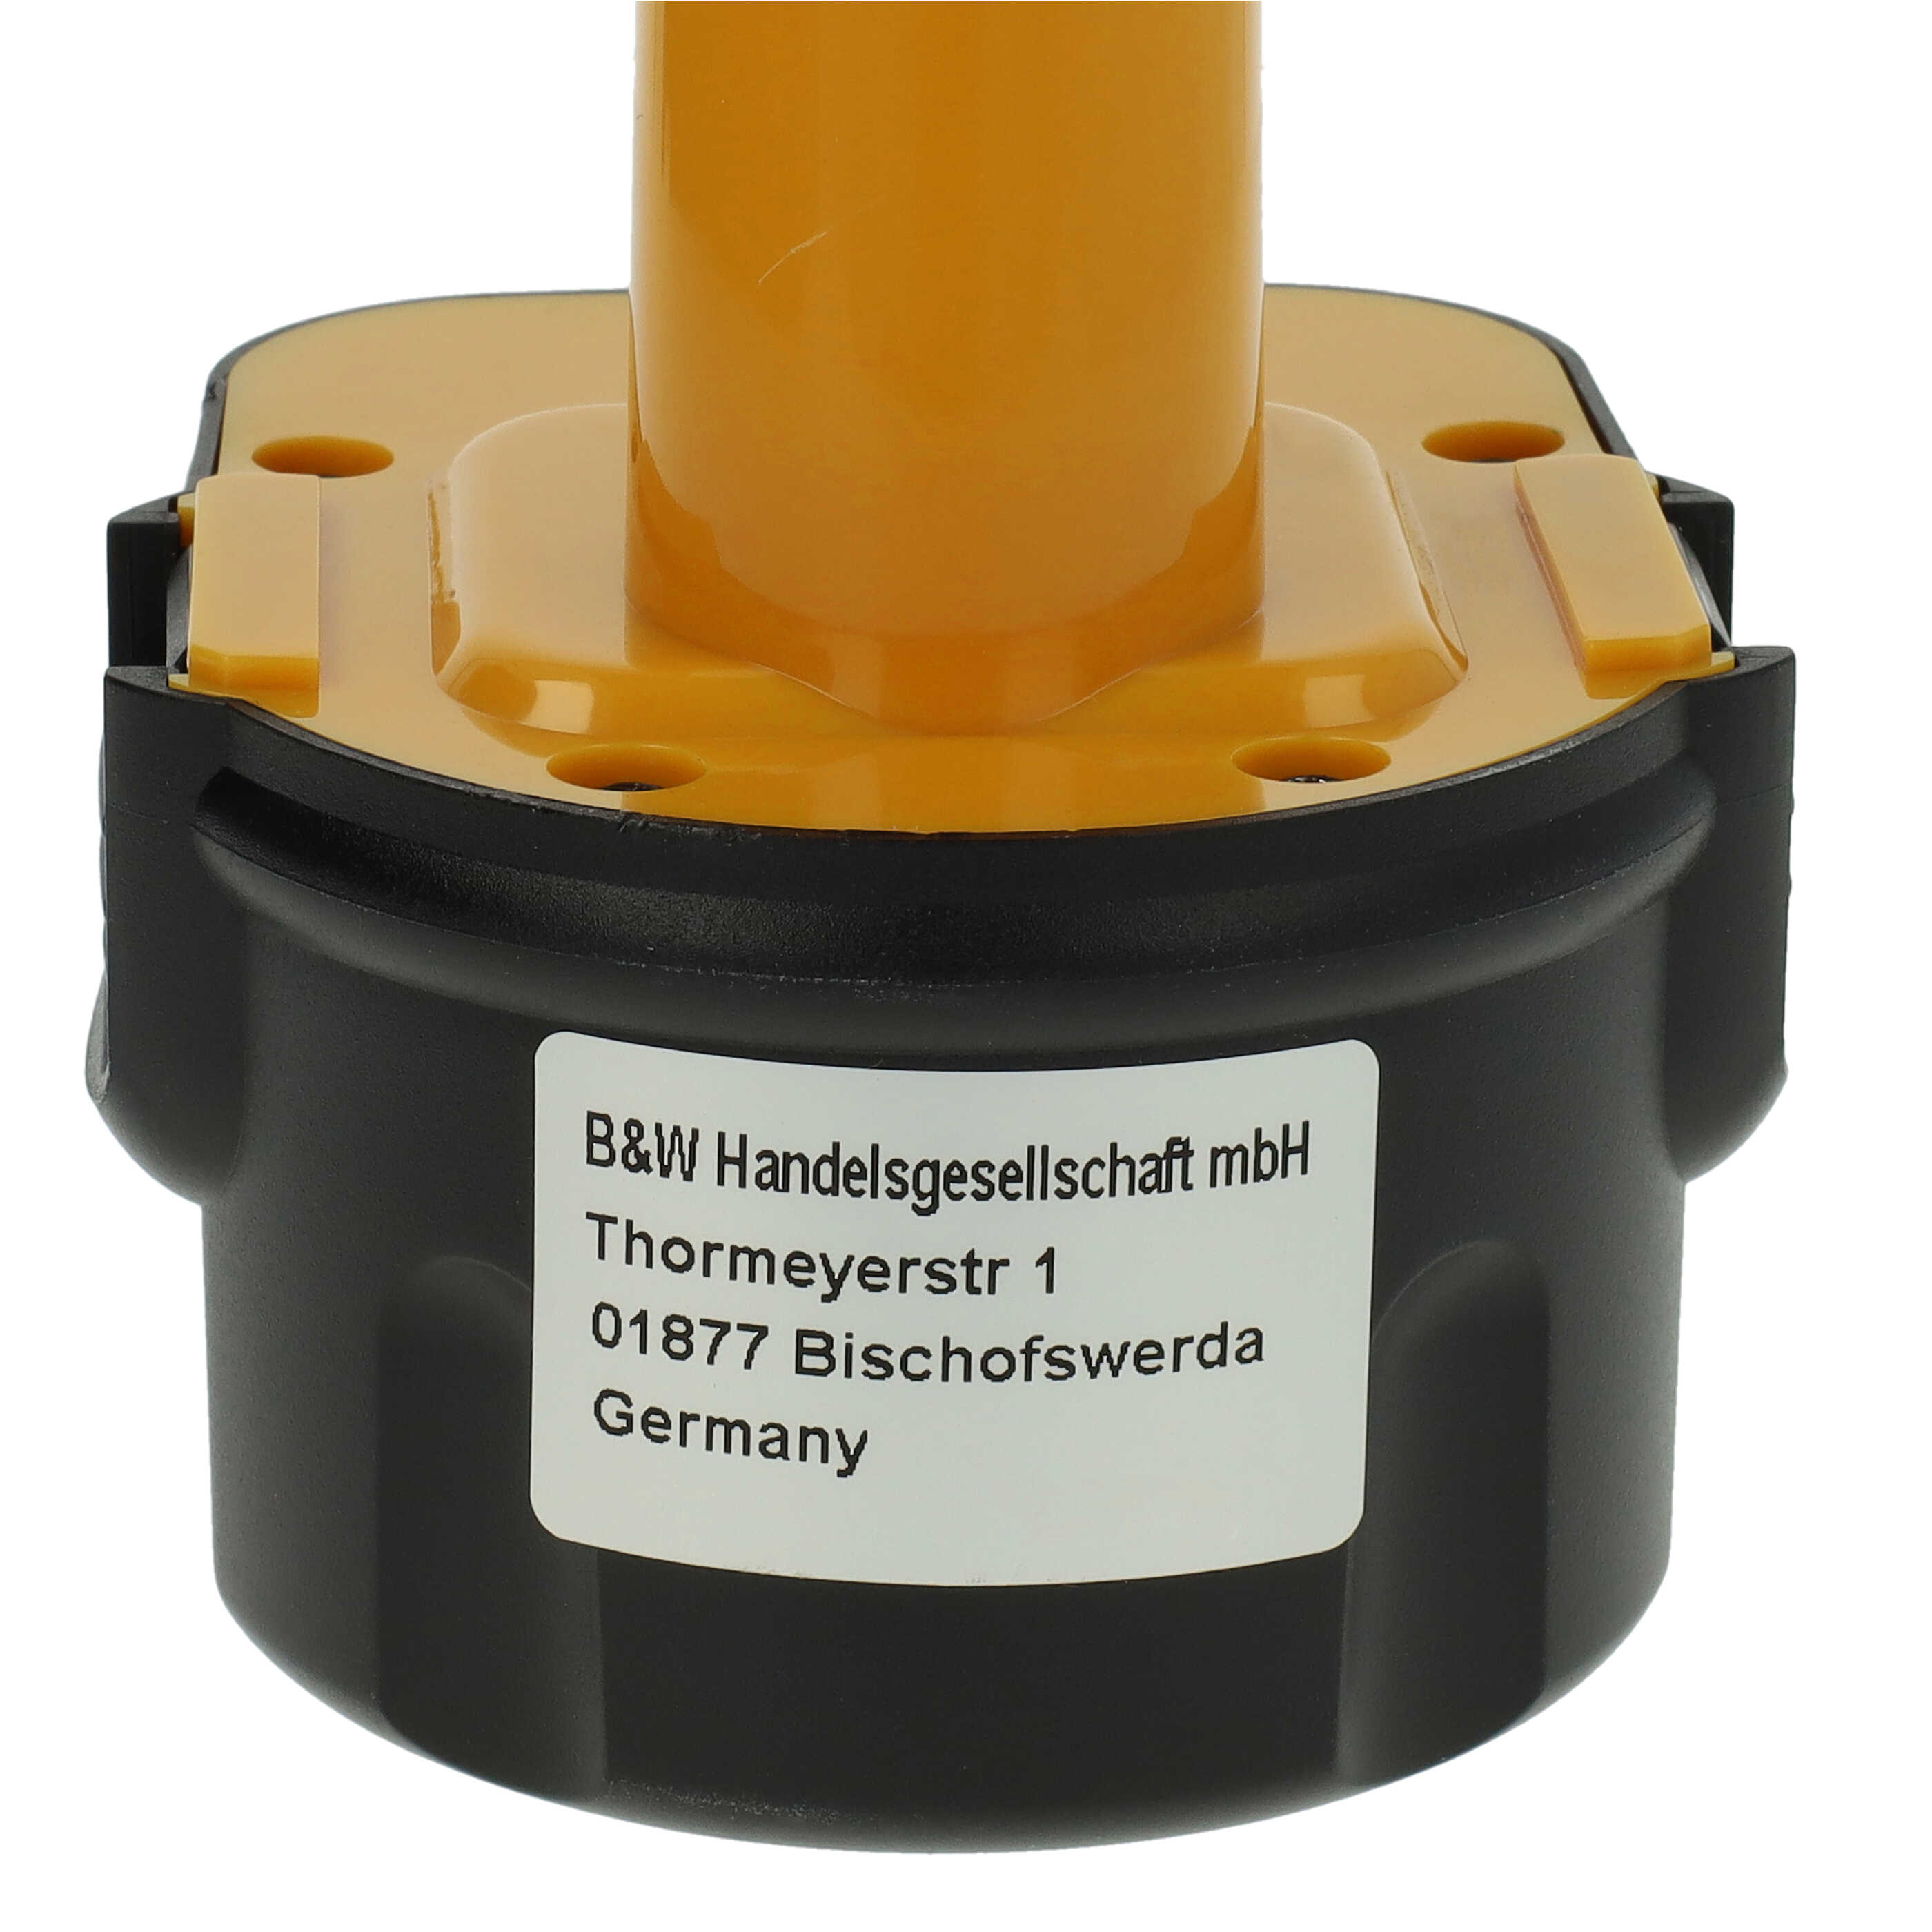 Akumulator do elektronarzędzi zamiennik Dewalt DC9071 - 3000 mAh, 12 V, NiMH